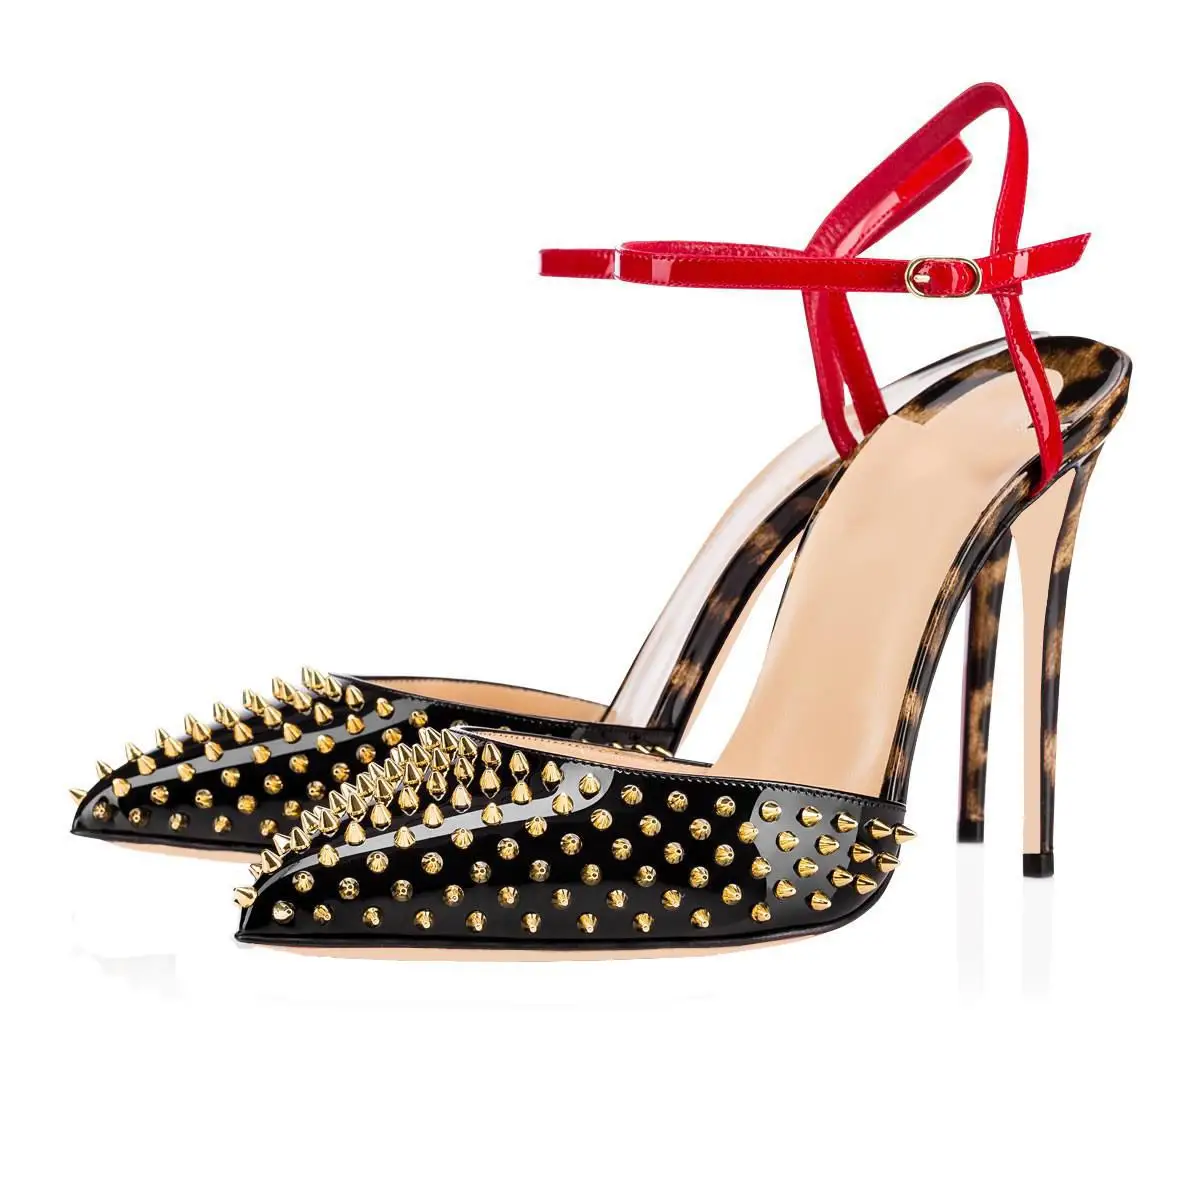 Moda sandalet sivri Burun leopar baskı Colorblock perçin Stiletto kadın yüksek topuklu ayakkabı ayakkabı